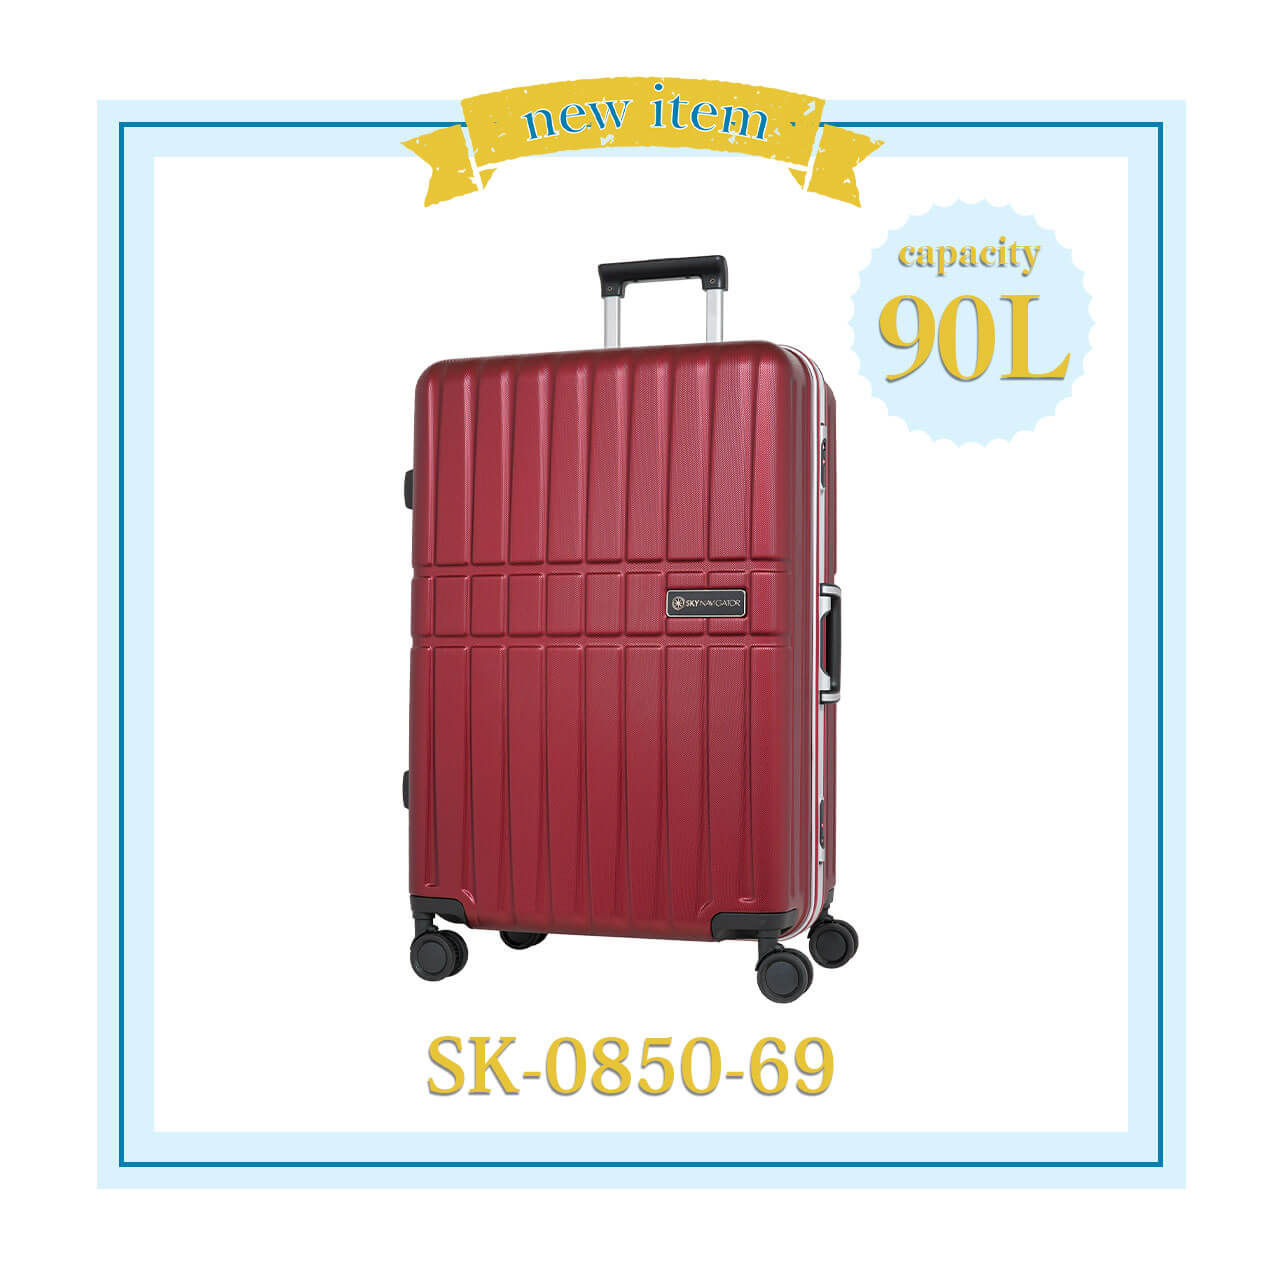 SKYNAVIGATORのスーツケースSK-0850-69新着のお知らせ